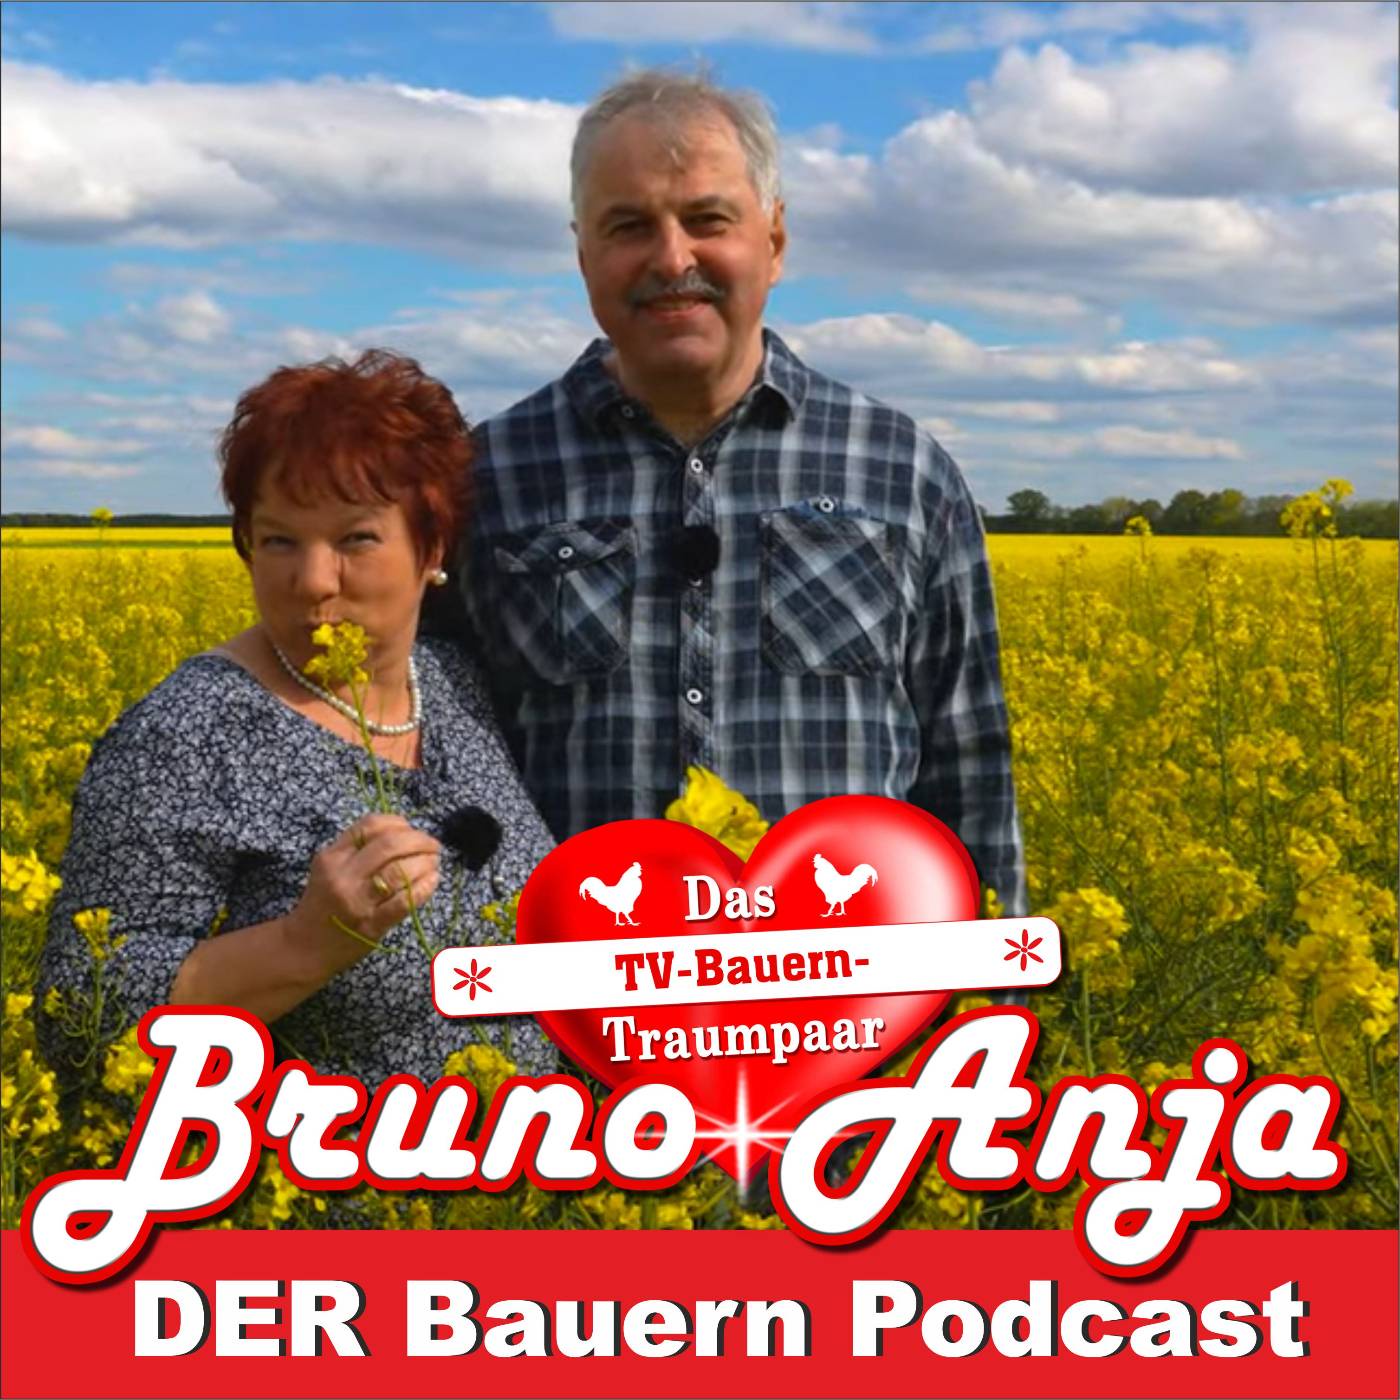 TV-Bauernpaar Bruno und Anja - Der Bauern Podcast